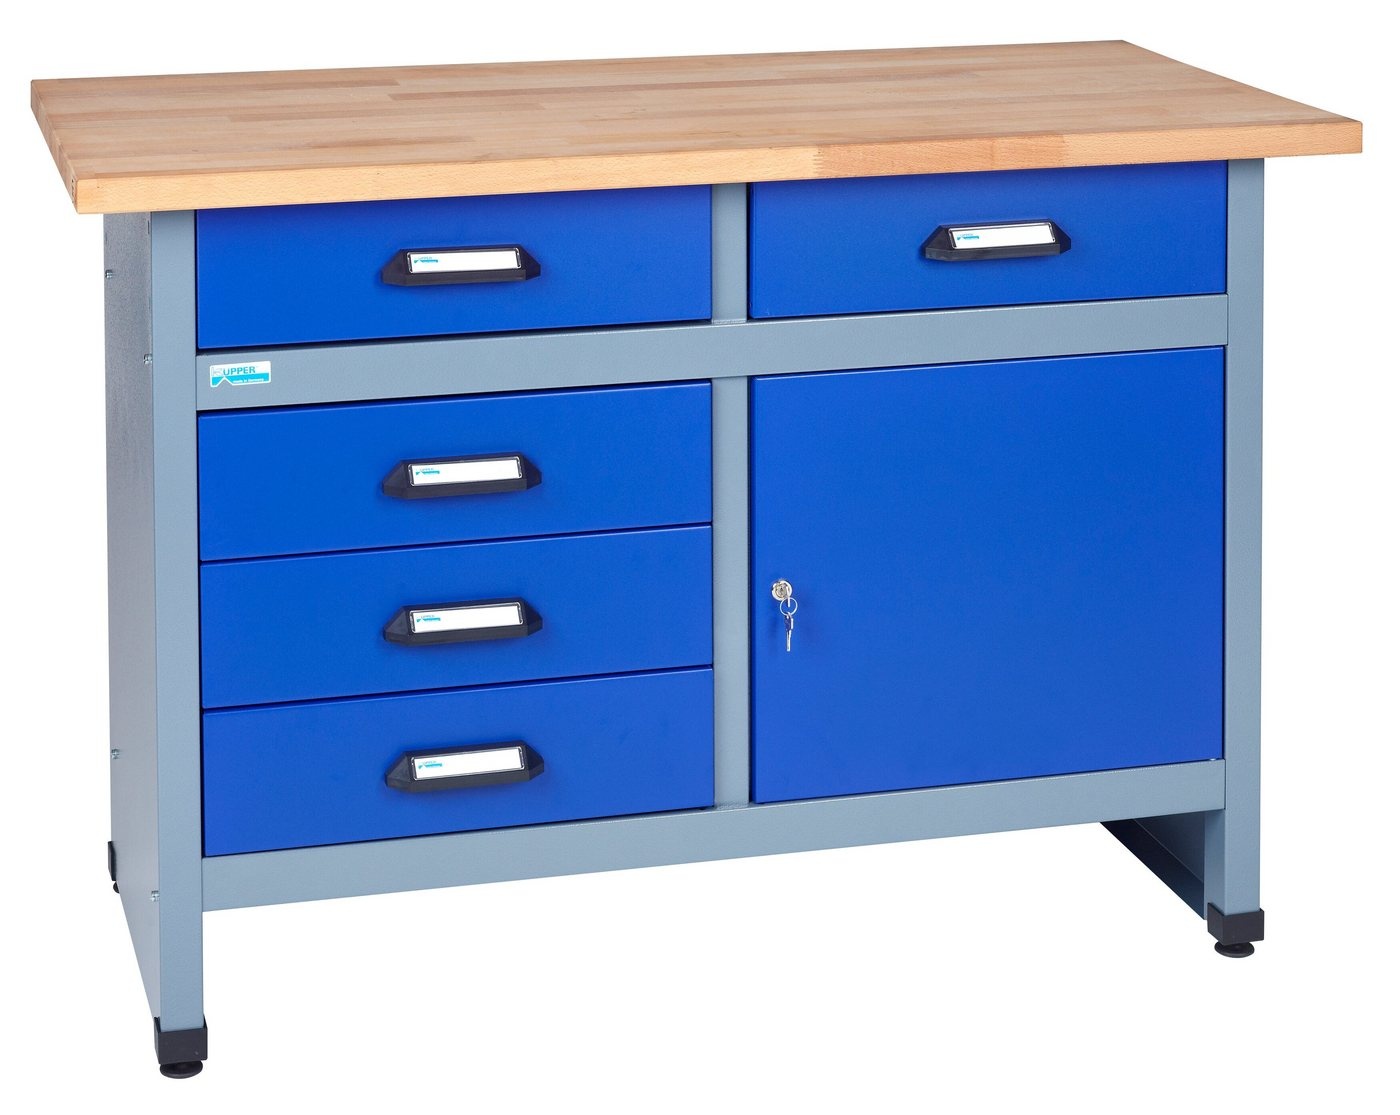 KÜPPER Werkbank 12047, 5 Schubladen, 1 Tür, 300 kg Traglast, 30 mm Buchenarbeitsplatte blau